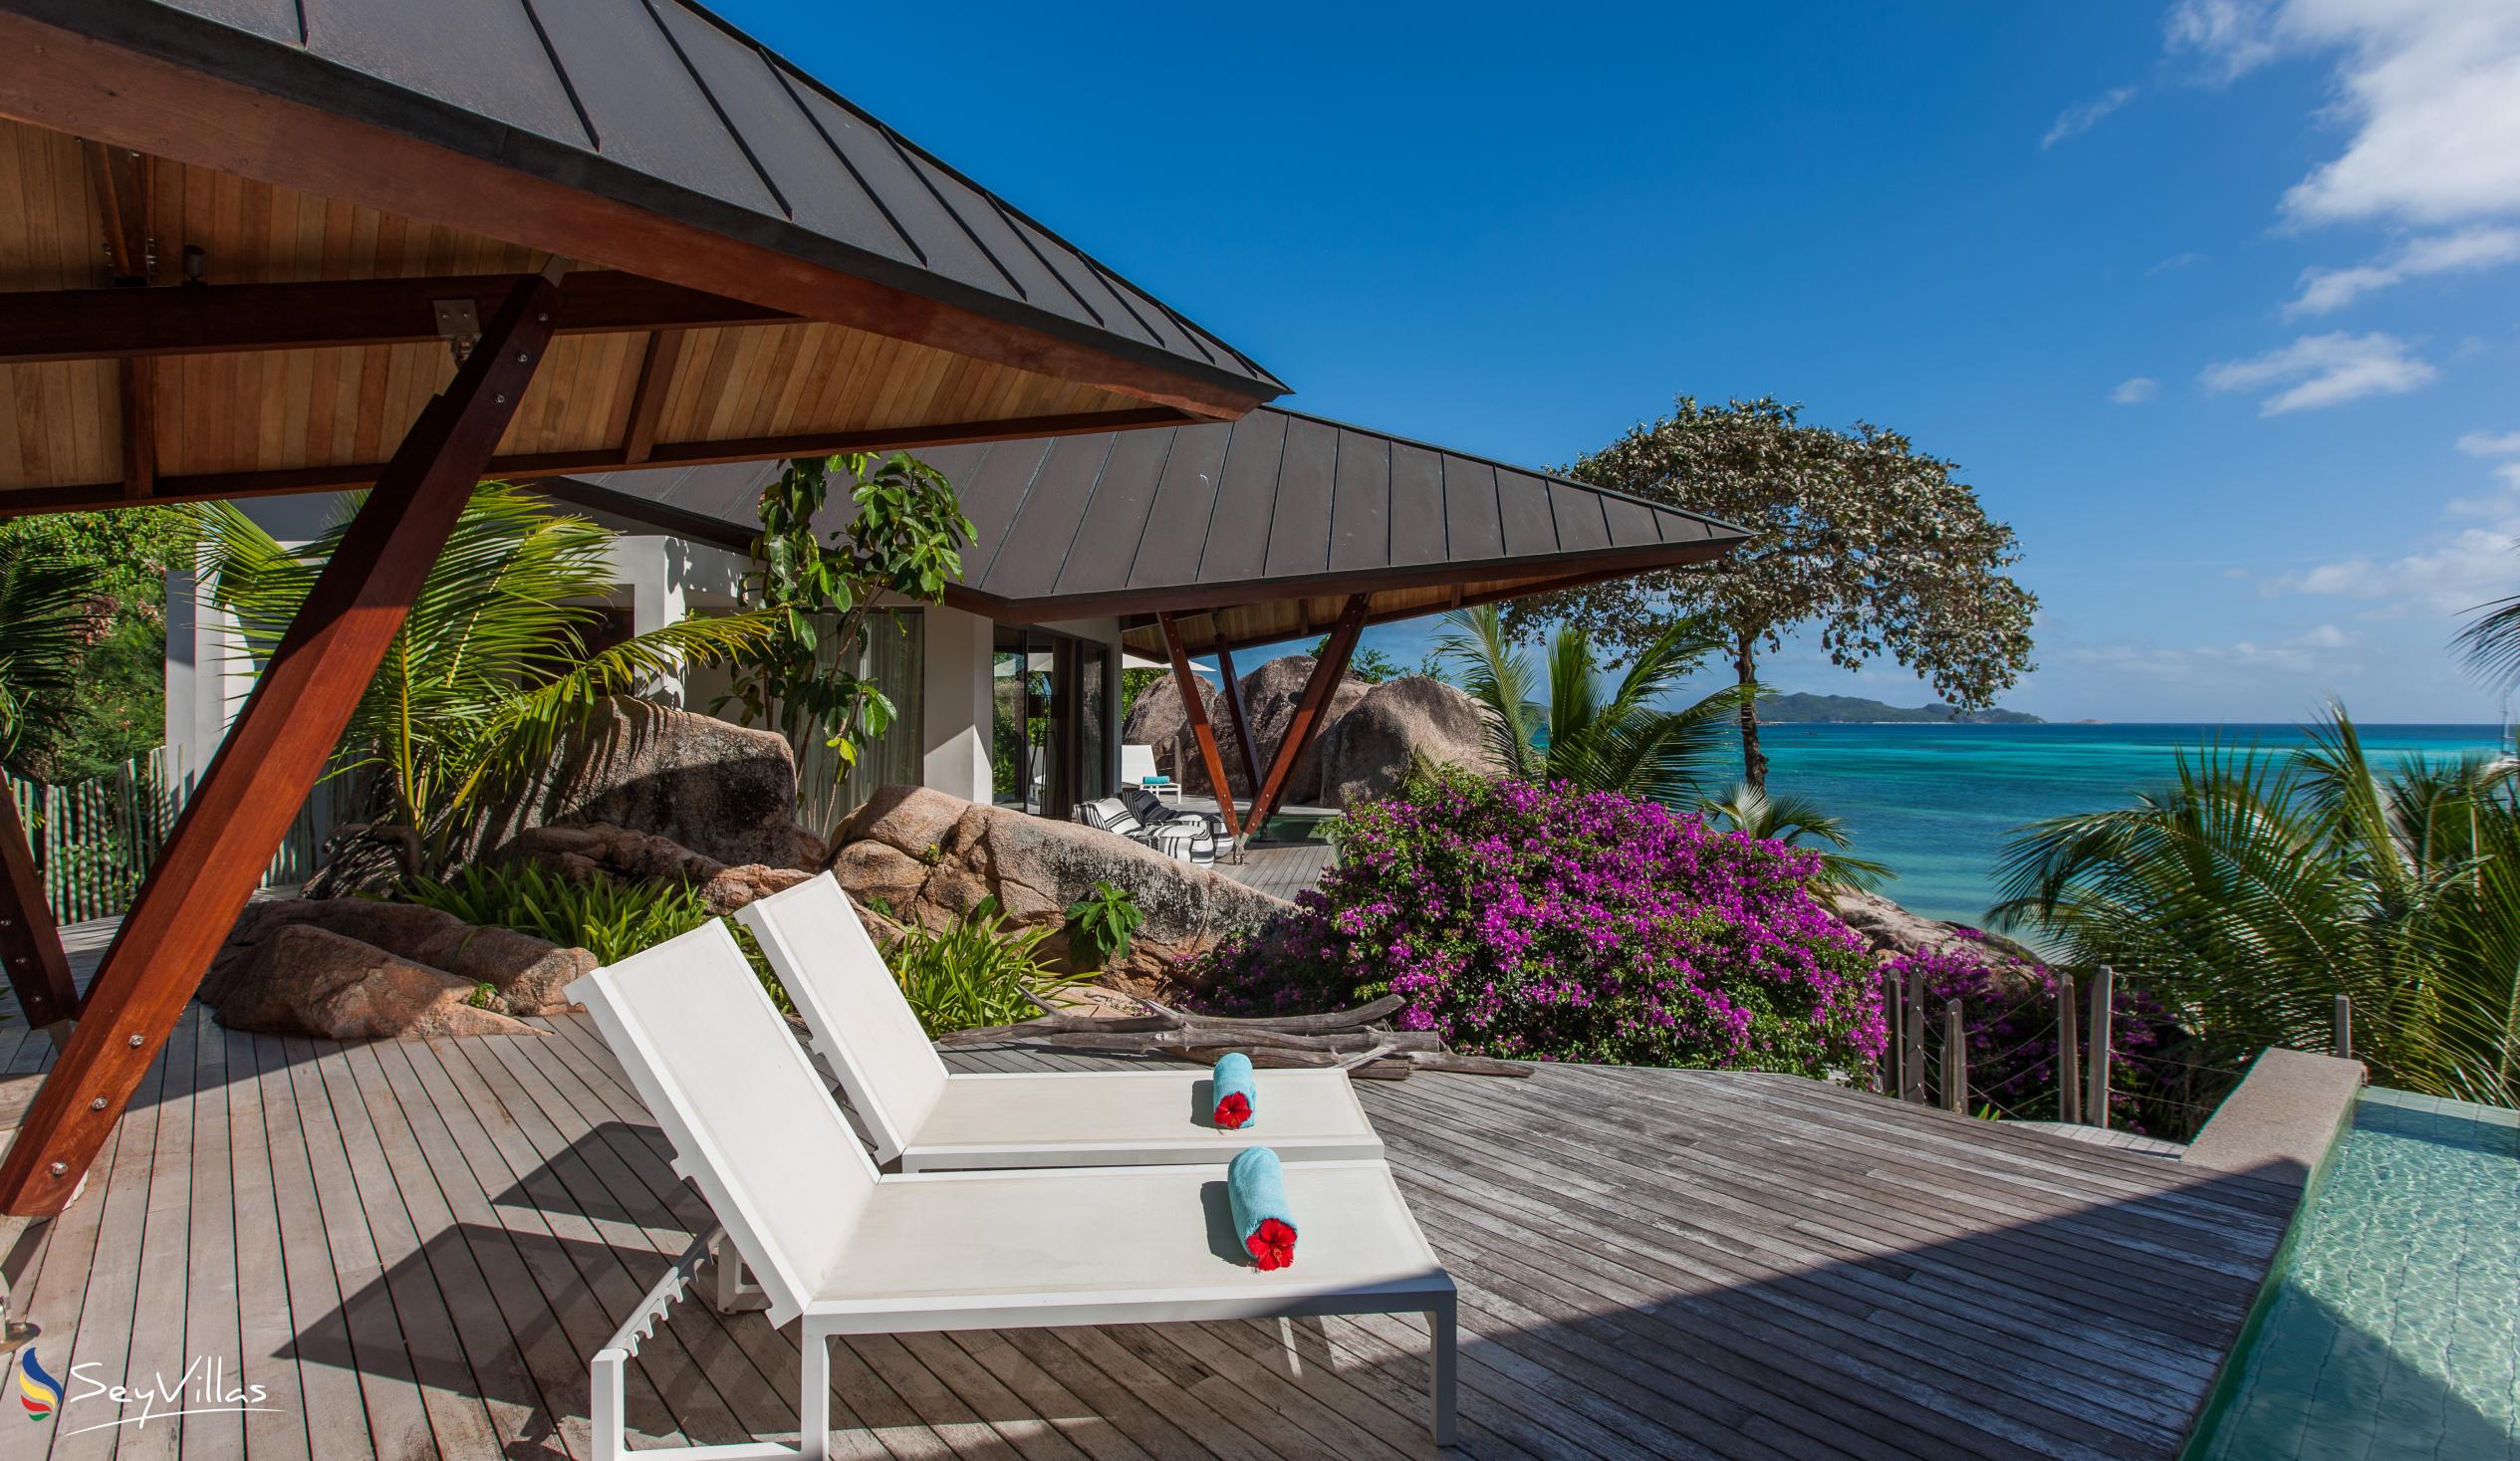 Foto 18: Villa Deckenia - Aussenbereich - Praslin (Seychellen)